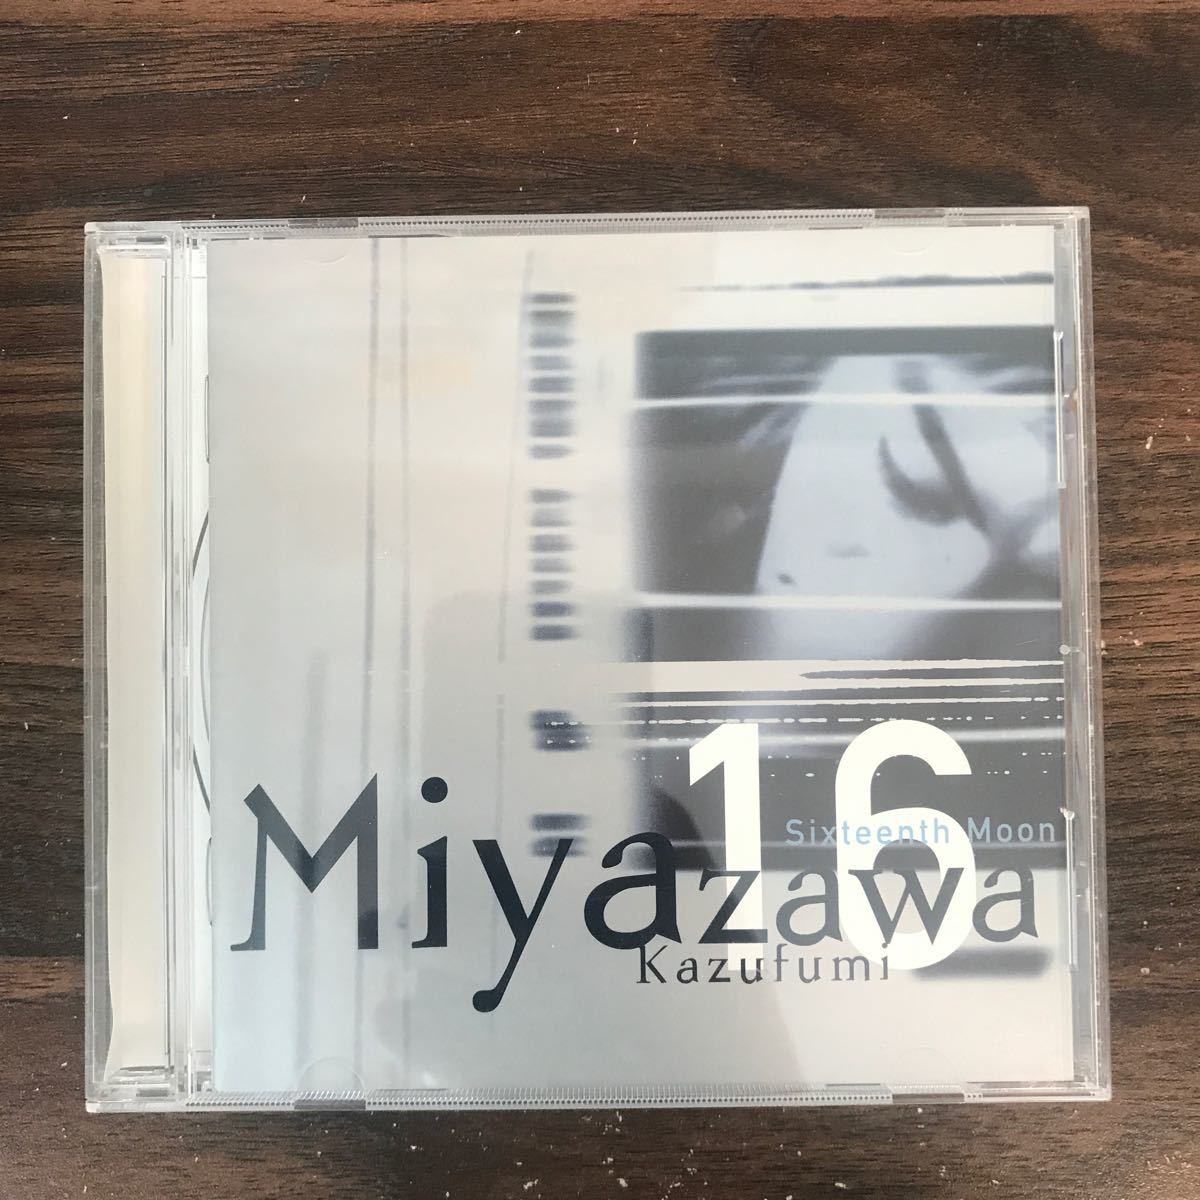 (457)中古CD100円 Miyazawa Kazuhumi Sixteenth Moon_画像1